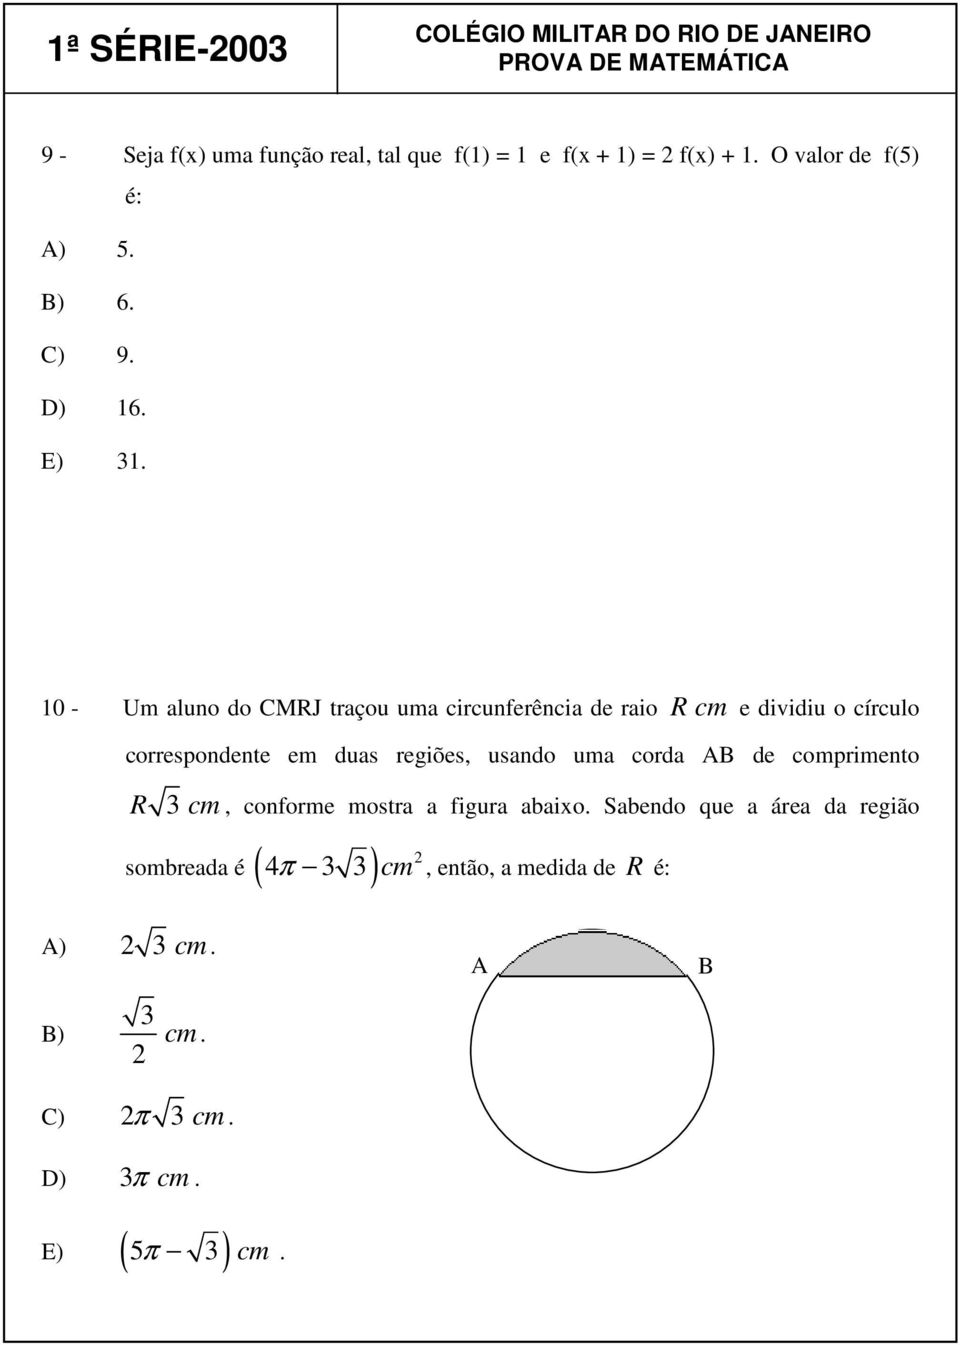 10 - Um aluno do CMRJ traçou uma circunferência de raio R cm e dividiu o círculo correspondente em duas